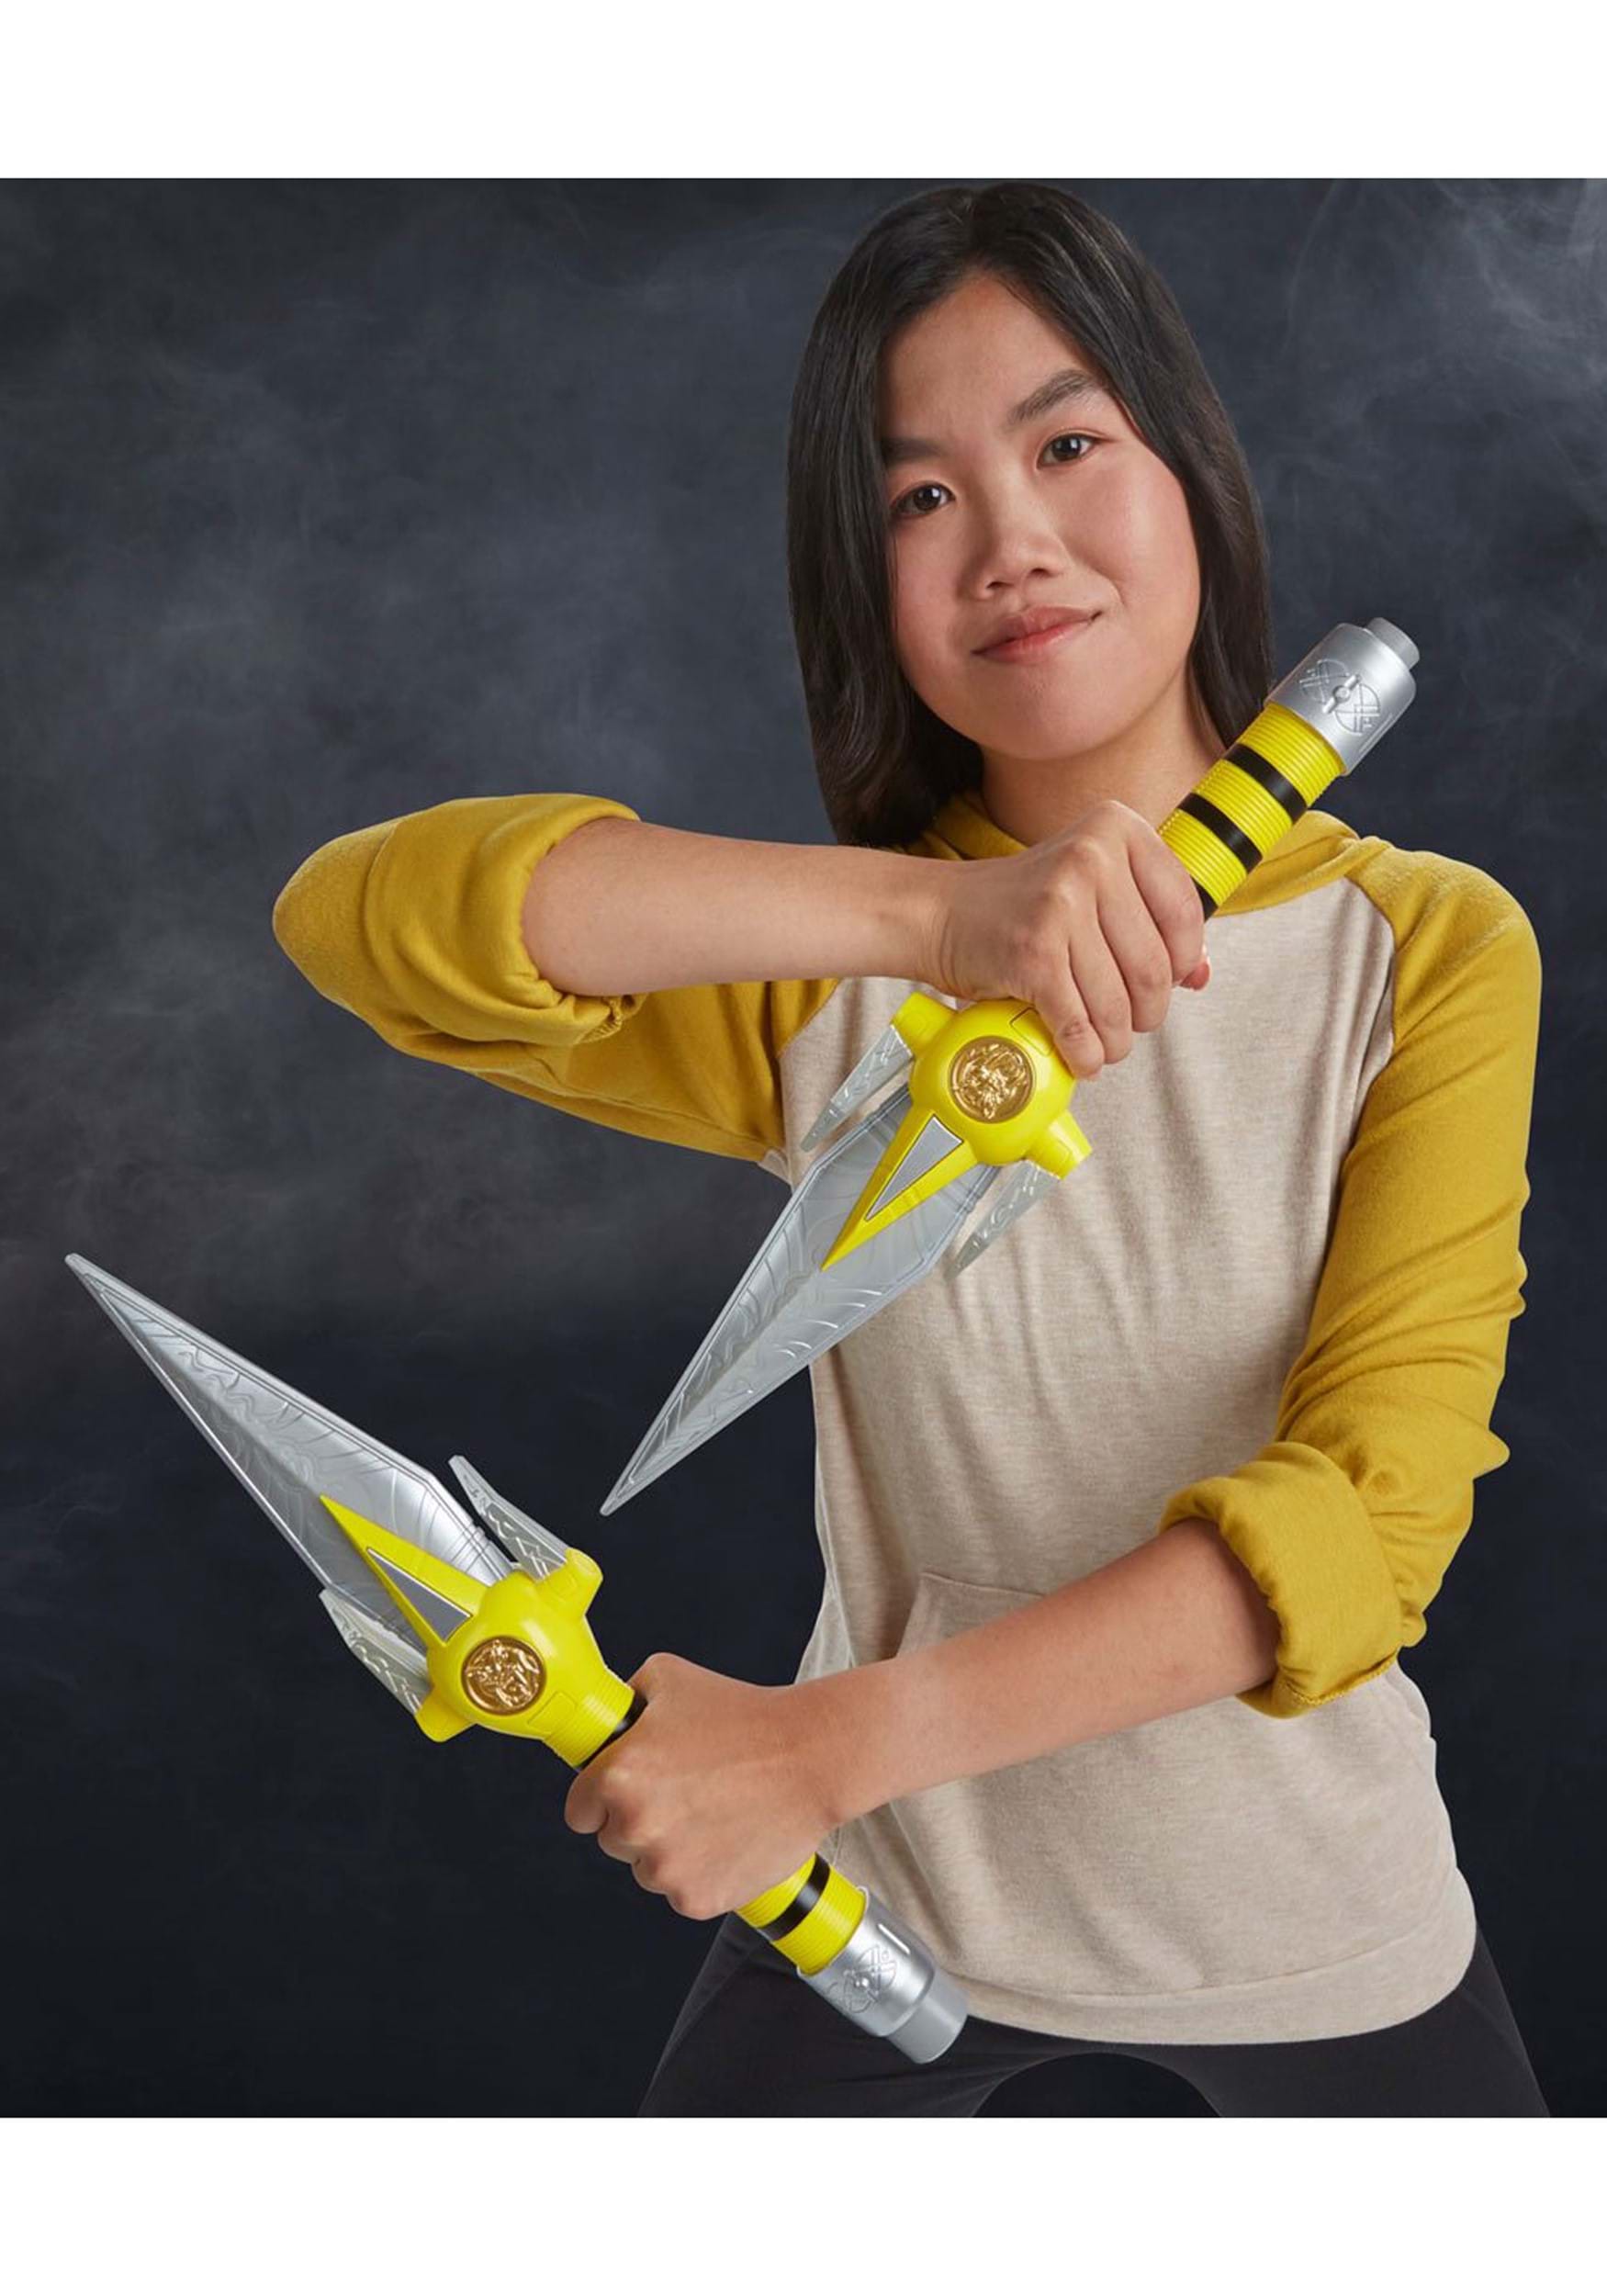 Power Rangers Lightning Collection Yellow Ranger Power Daggers Prop Replica